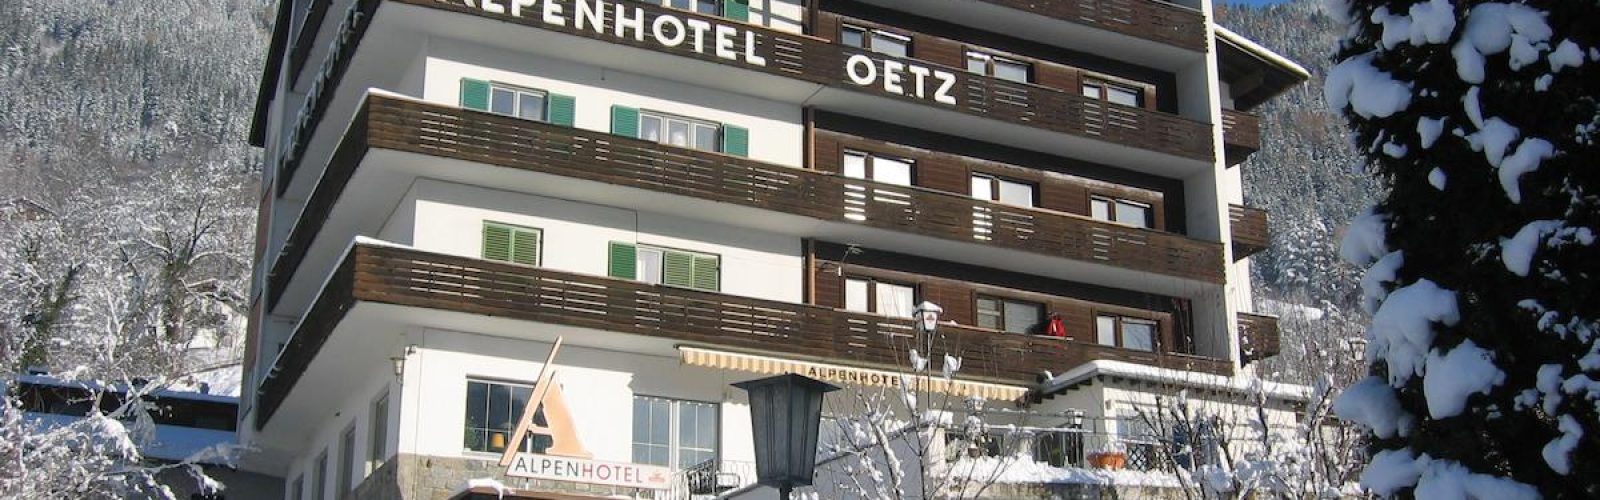 Alpenhotel Oetz, Sölden -www.aktivostrig.dk